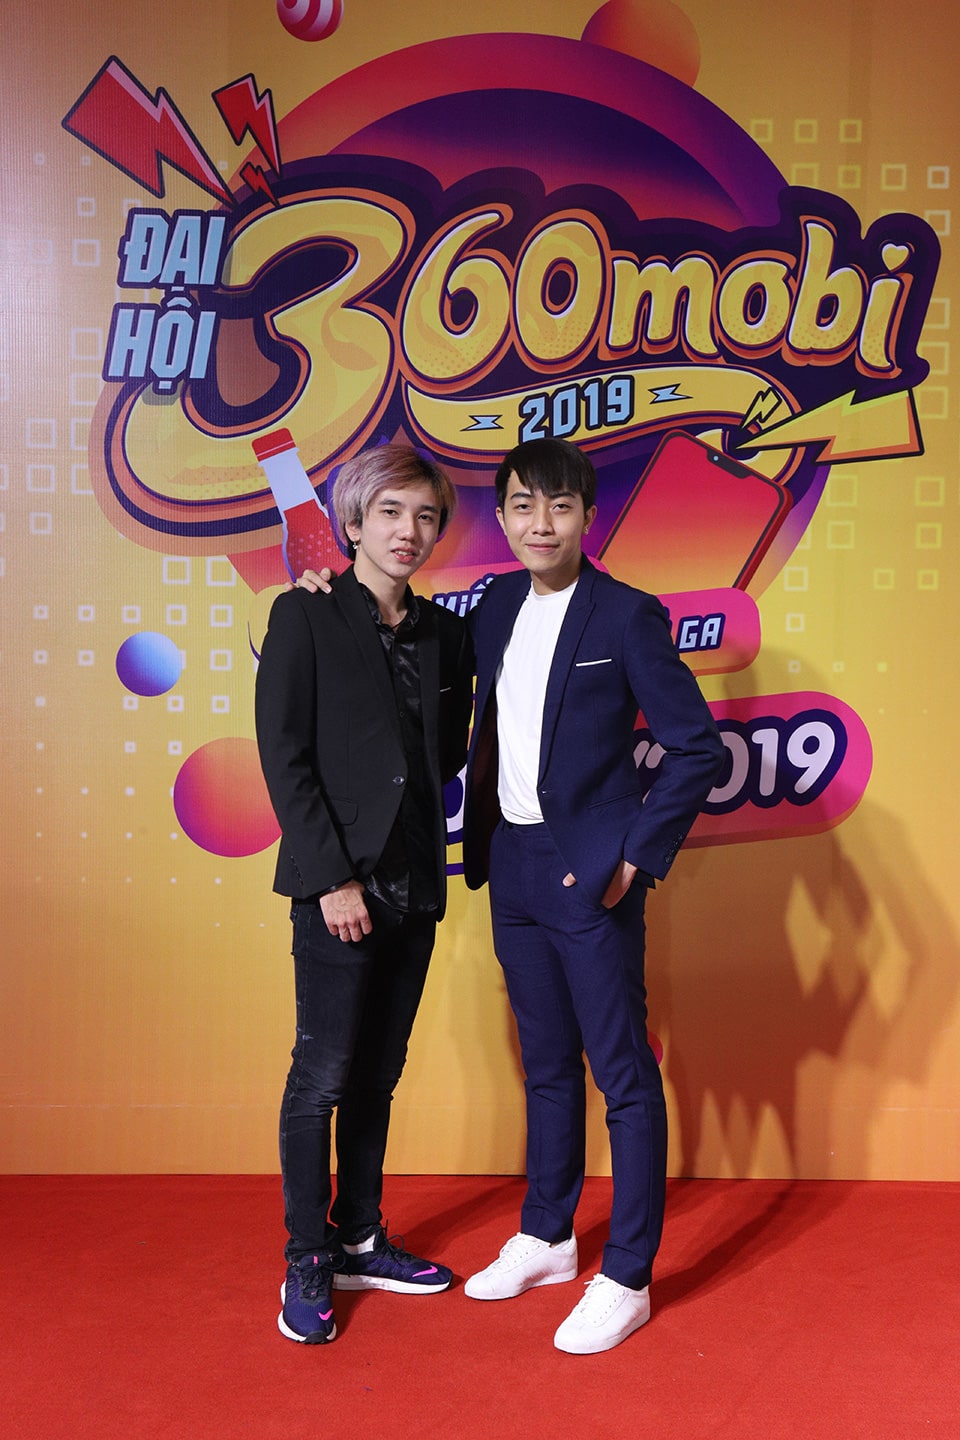 Bé Chanh và Cris Devil Gamer tạo dáng trên thảm đỏ của buổi họp báo công bố Đại Hội 360mobi 2019.